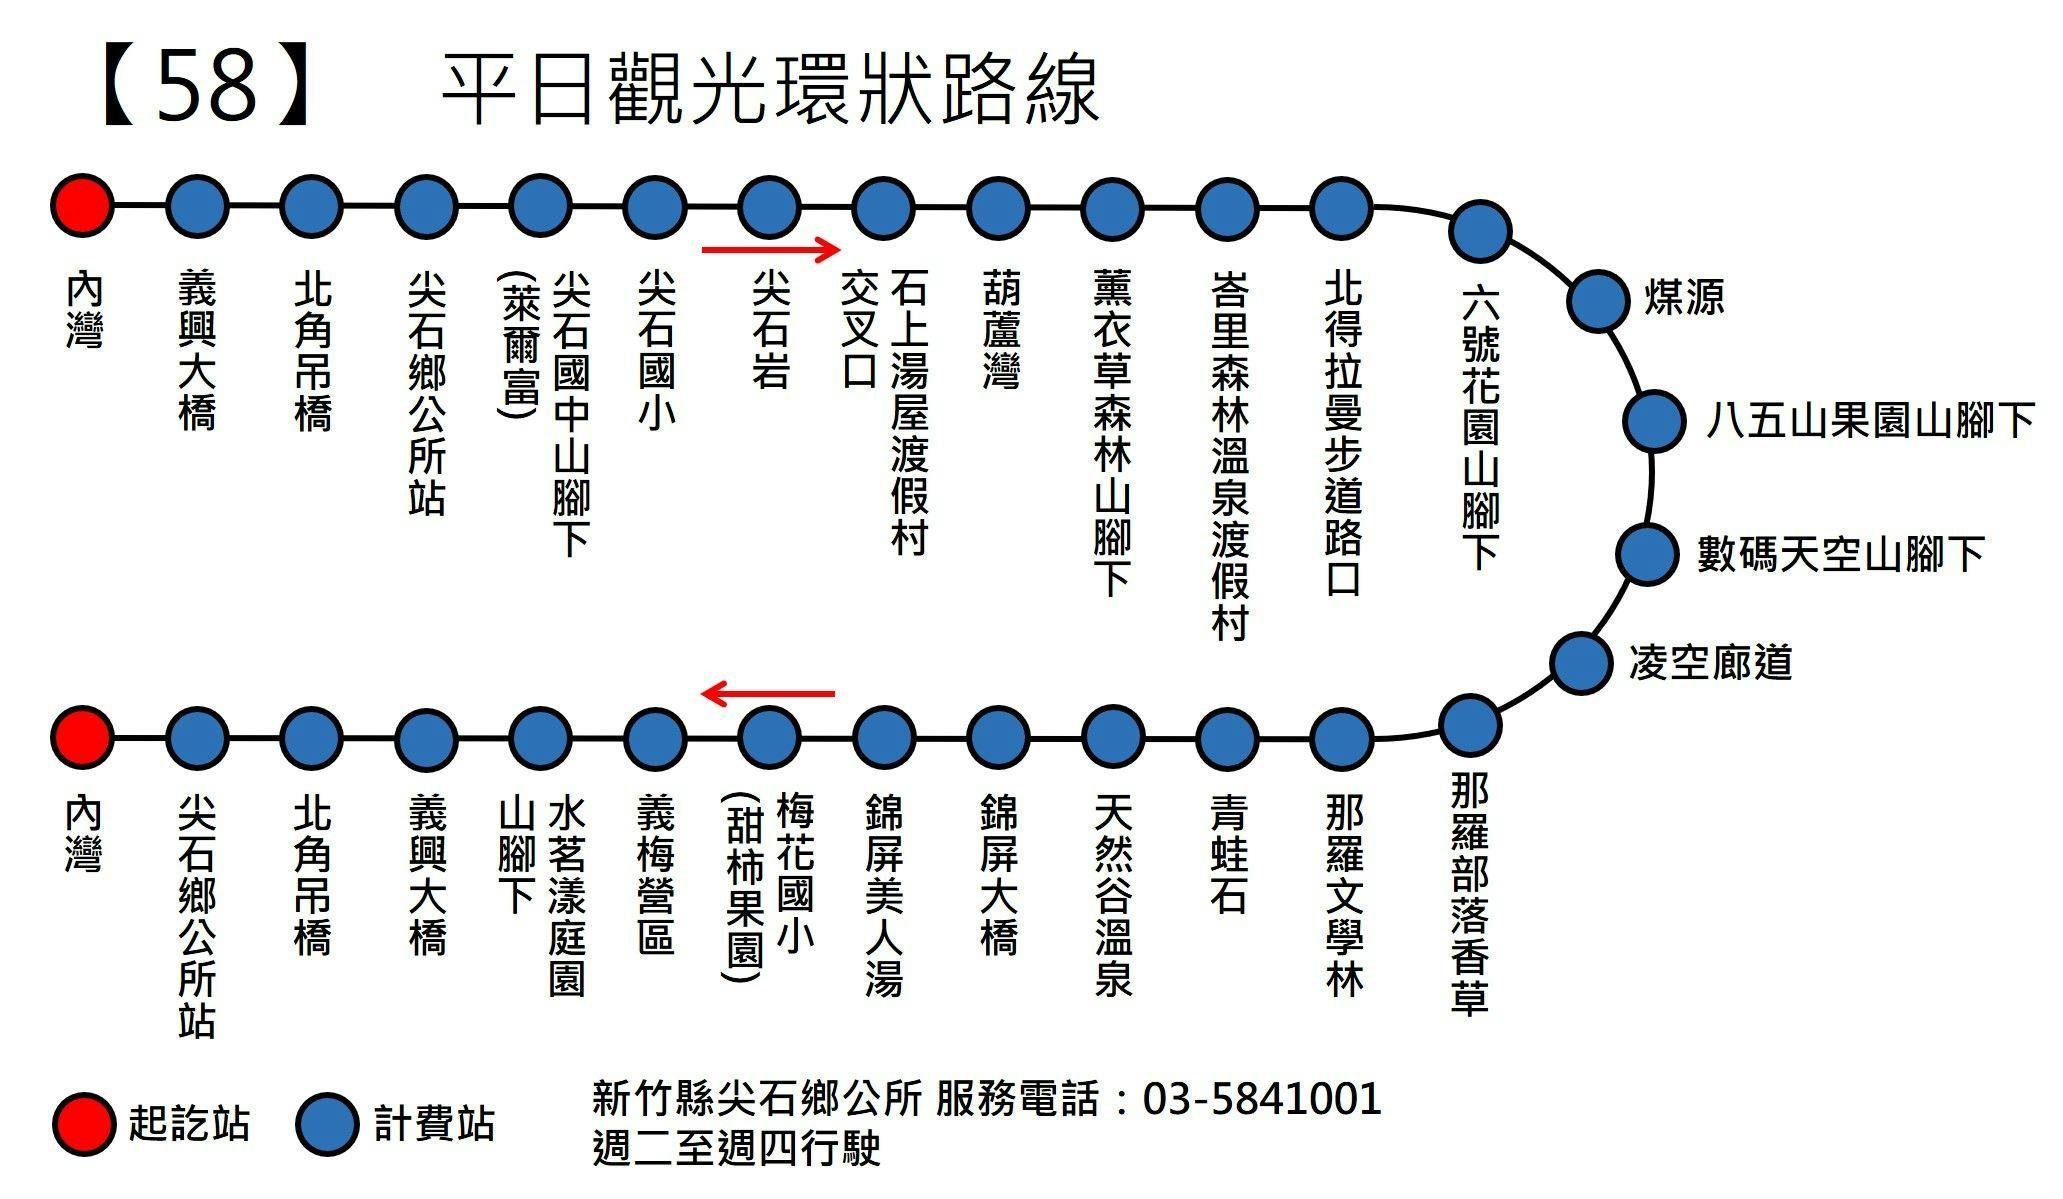 竹62Route Map-新竹縣 Bus